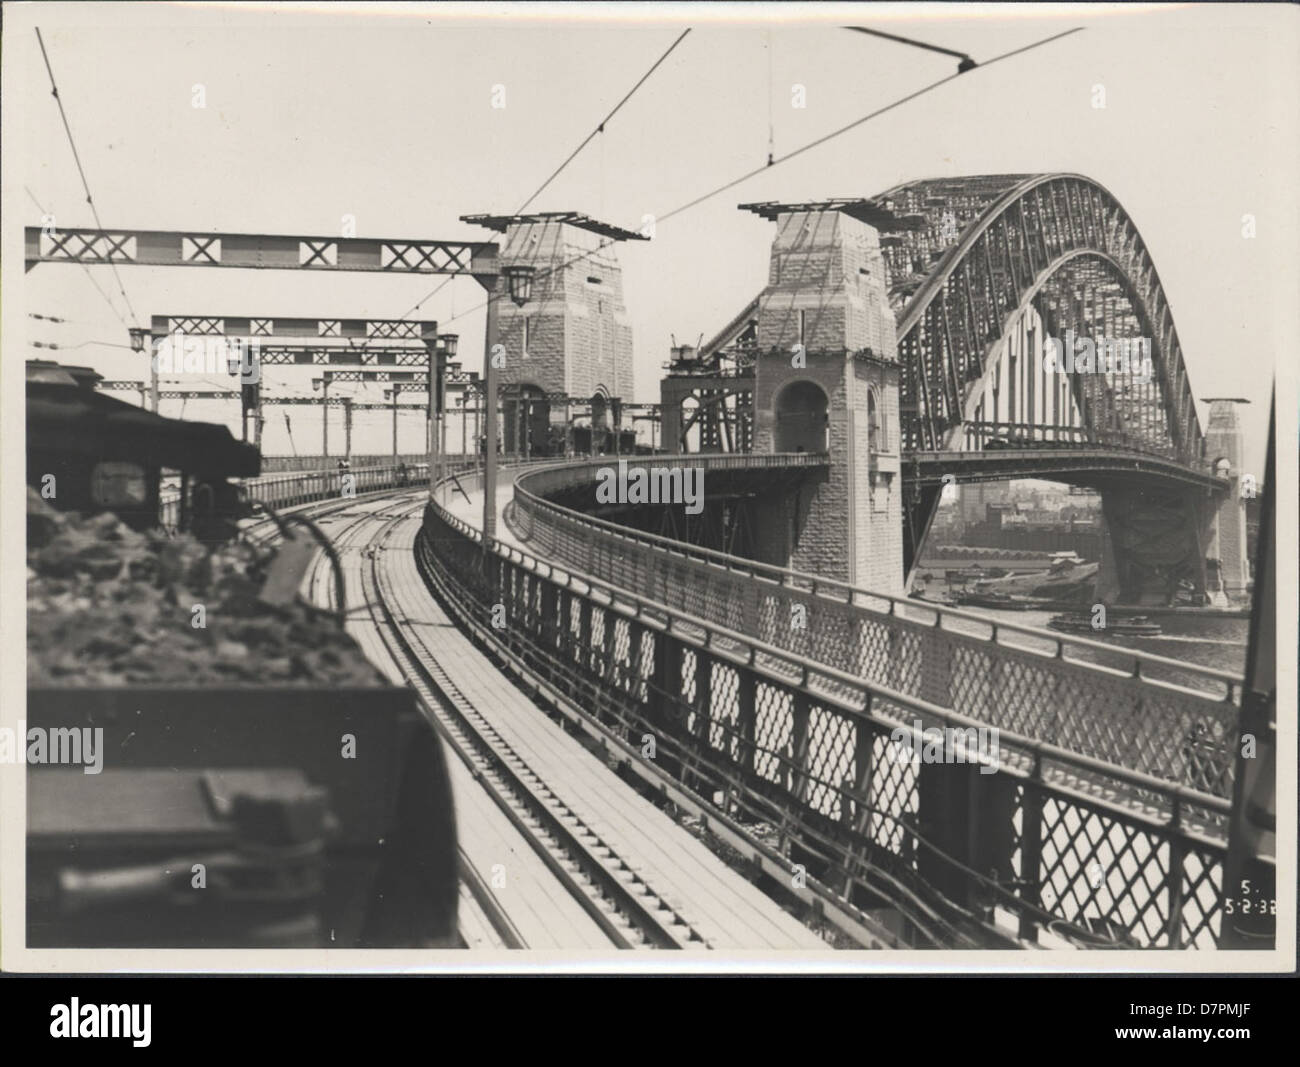 87/1353-153tirage photographique, former sur le Harbour Bridge, l'argent / gélatine / papier, photographie de la Nouvelle Galles du sud Ministère des Travaux publics, Sydney, Australie, Février, 1932 Banque D'Images